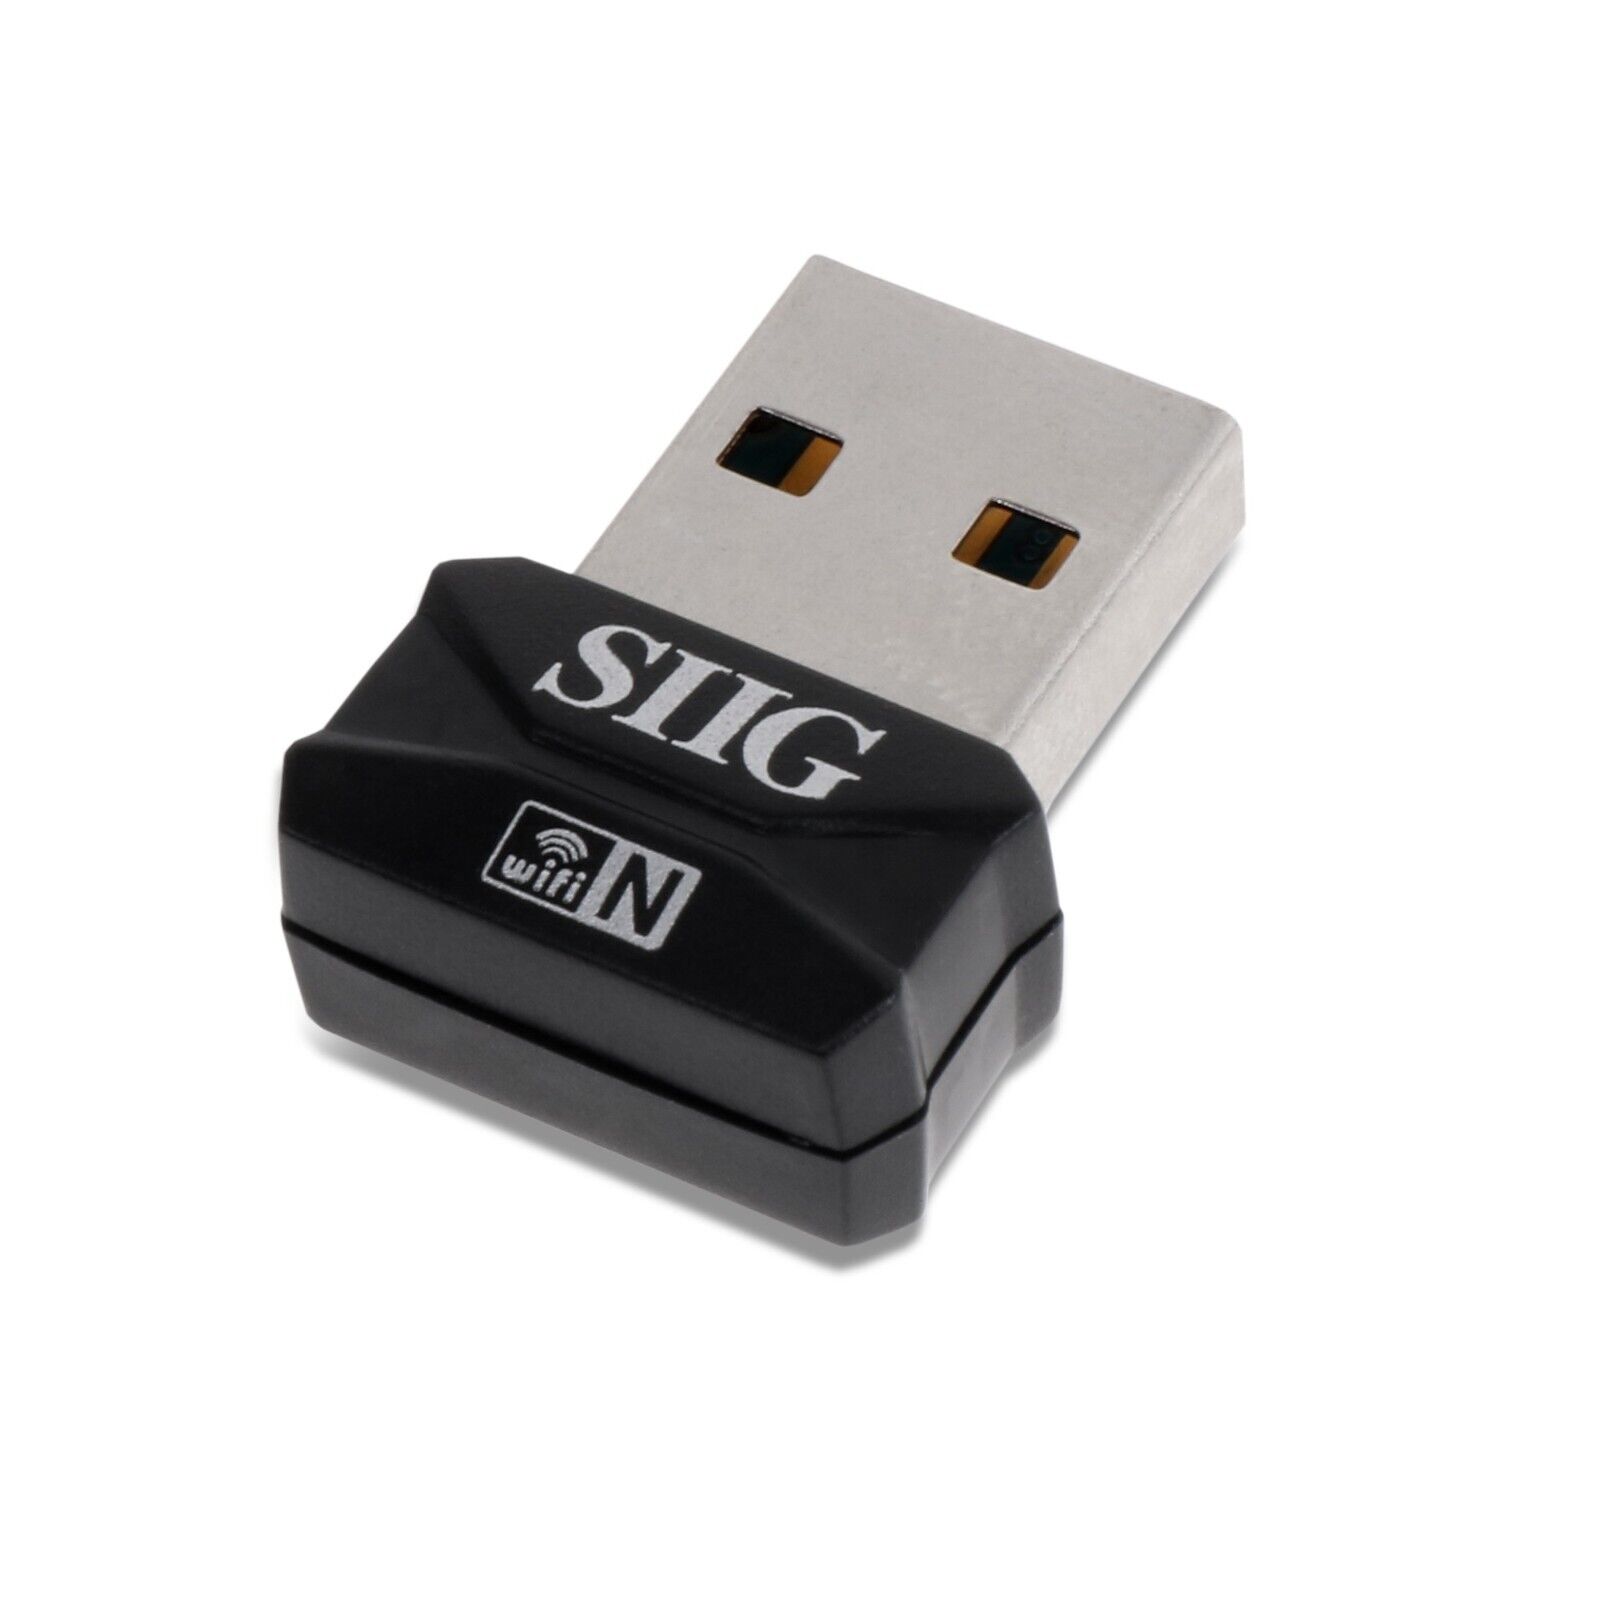 SIIG Network Wireless-N Mini USB Wi-Fi Adapter Retail Model JU-WR0112-S2